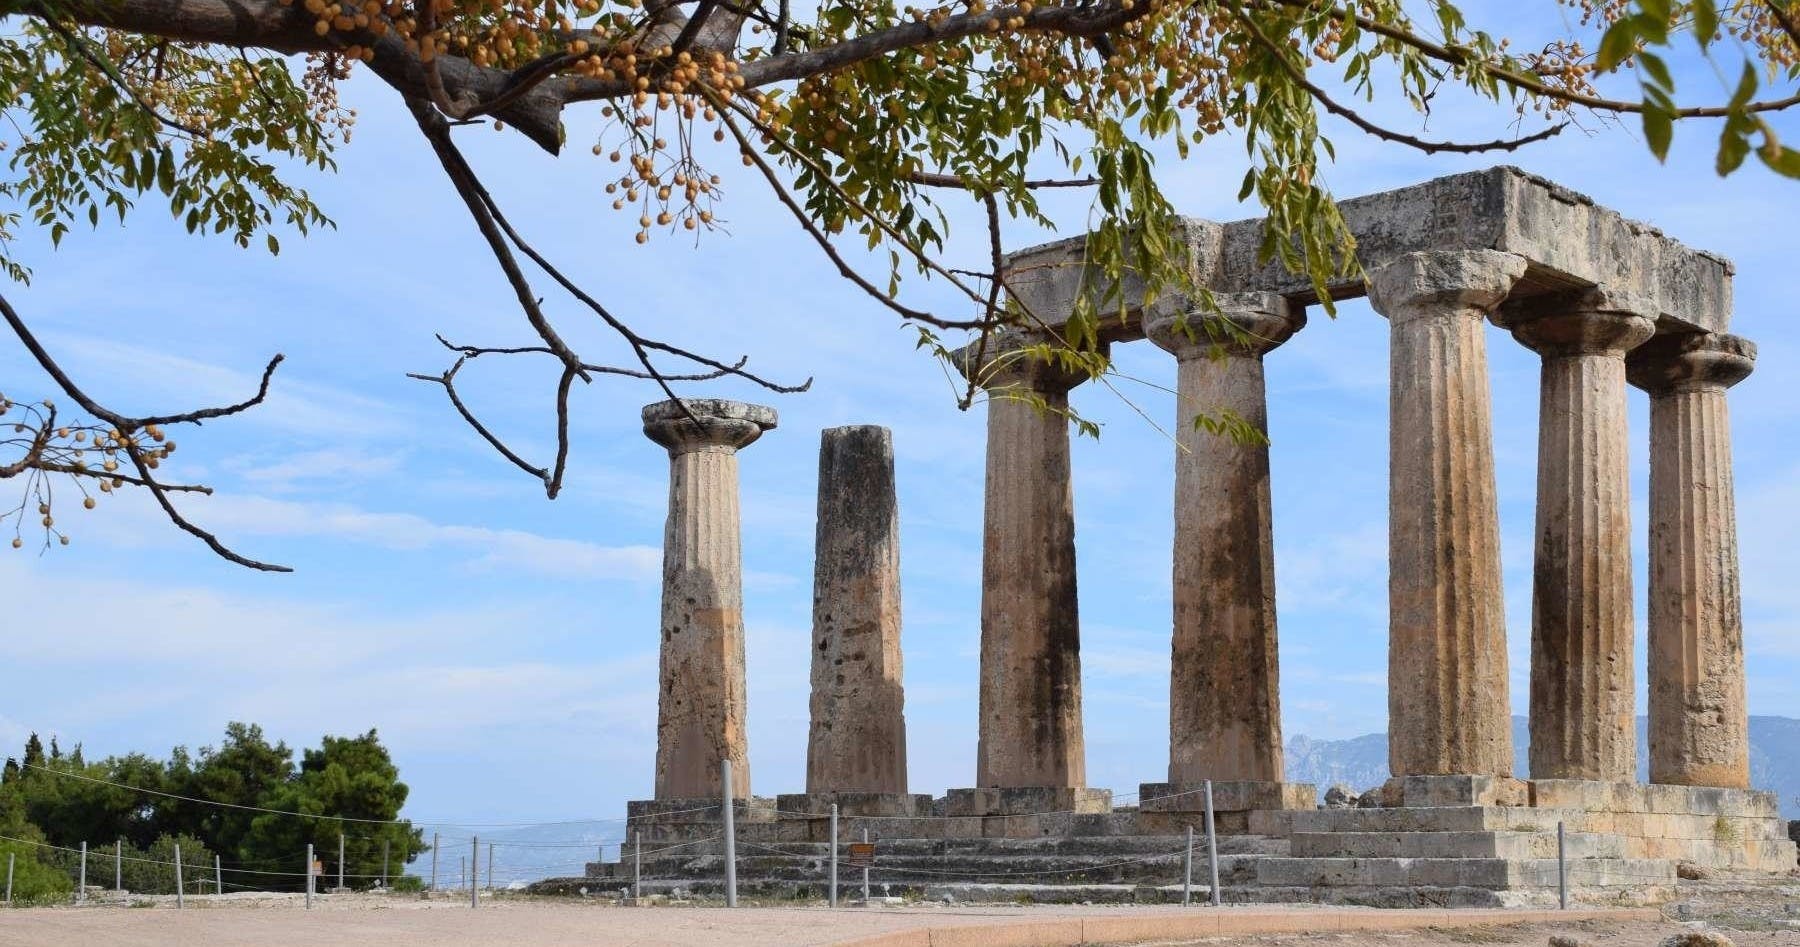 Visita guiada à antiga Corinto e degustação de vinhos em Nemea saindo de Atenas